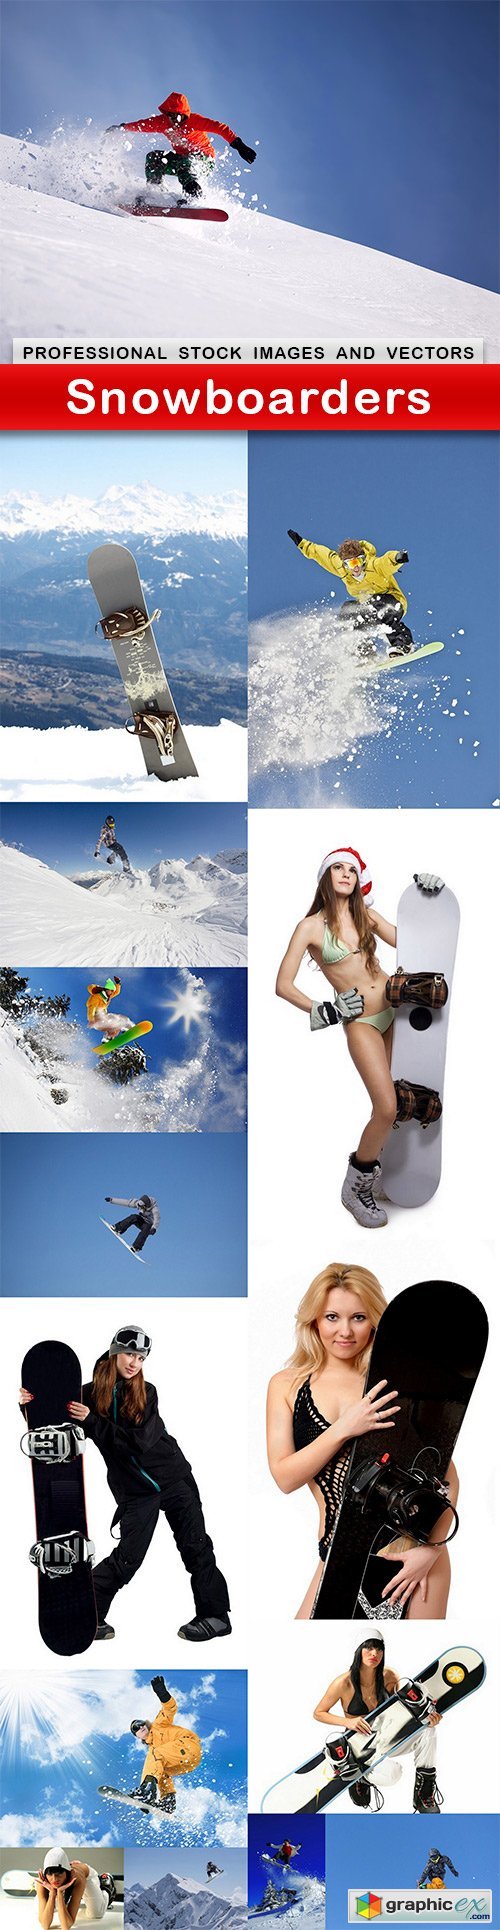 Snowboarders - 15 UHQ JPEG